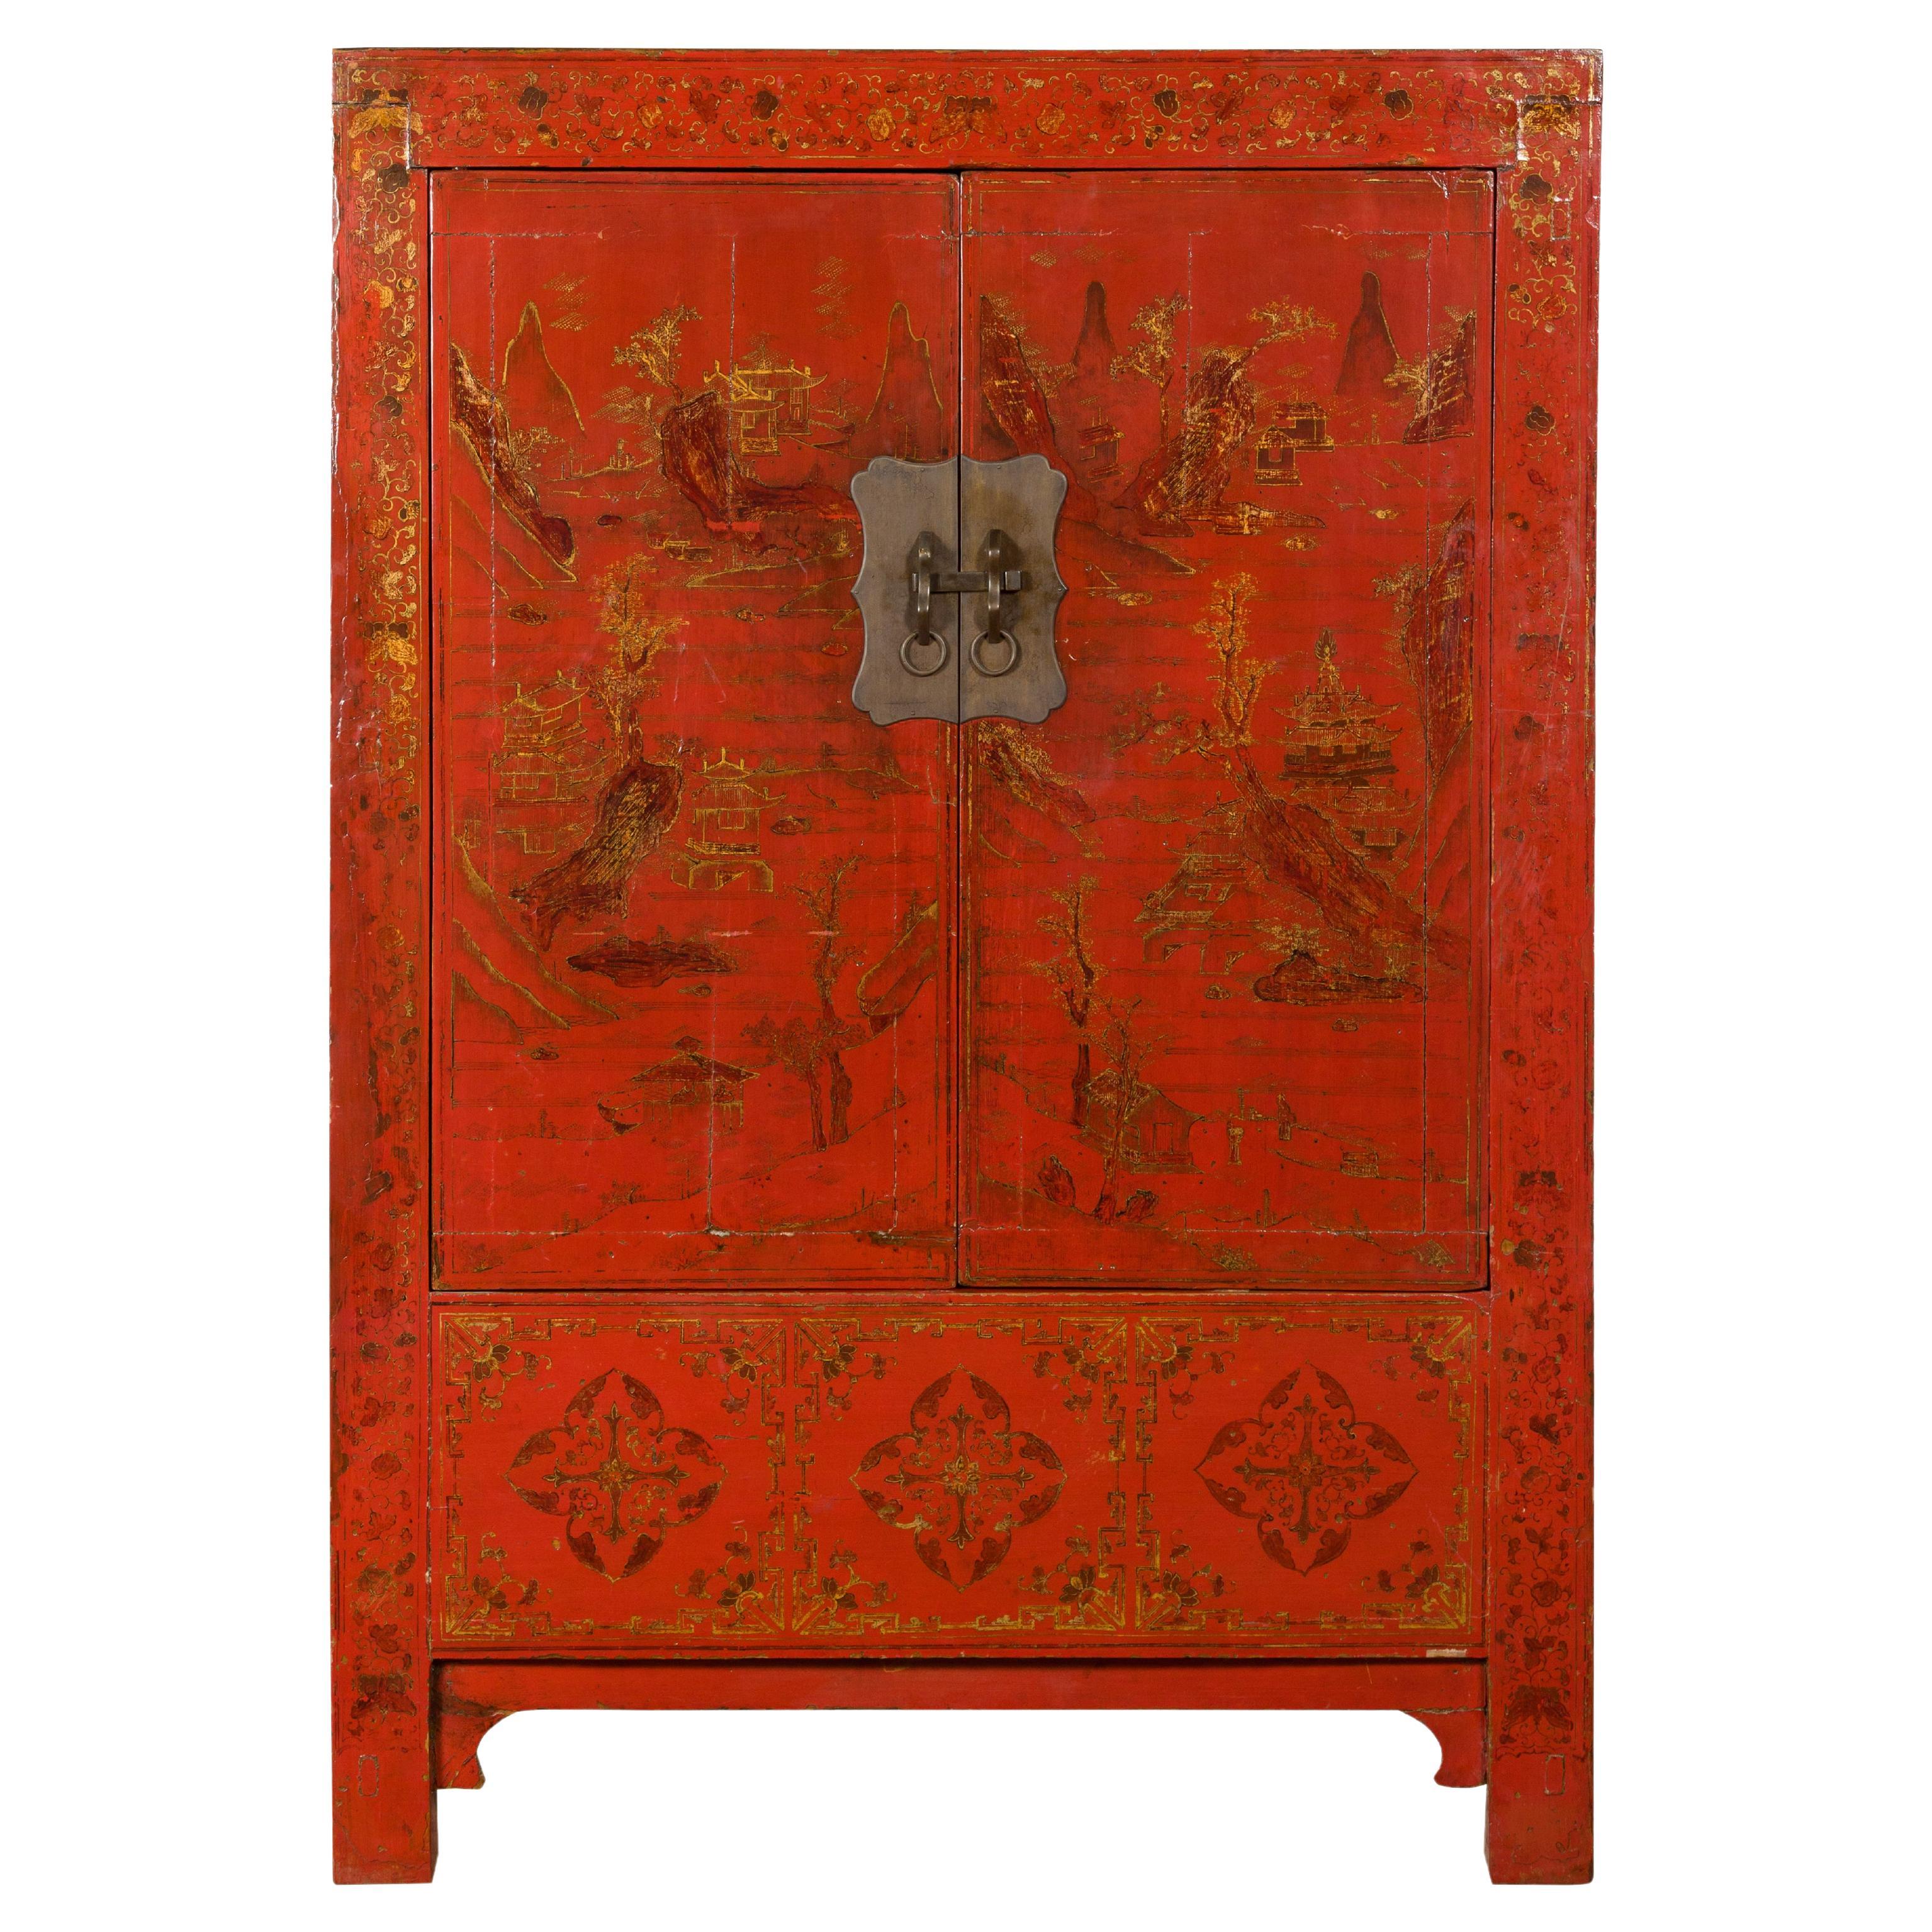 Rotes Lackkabinett aus der Qing-Dynastie, 19. Jahrhundert, mit vergoldetem, handbemaltem Dekor